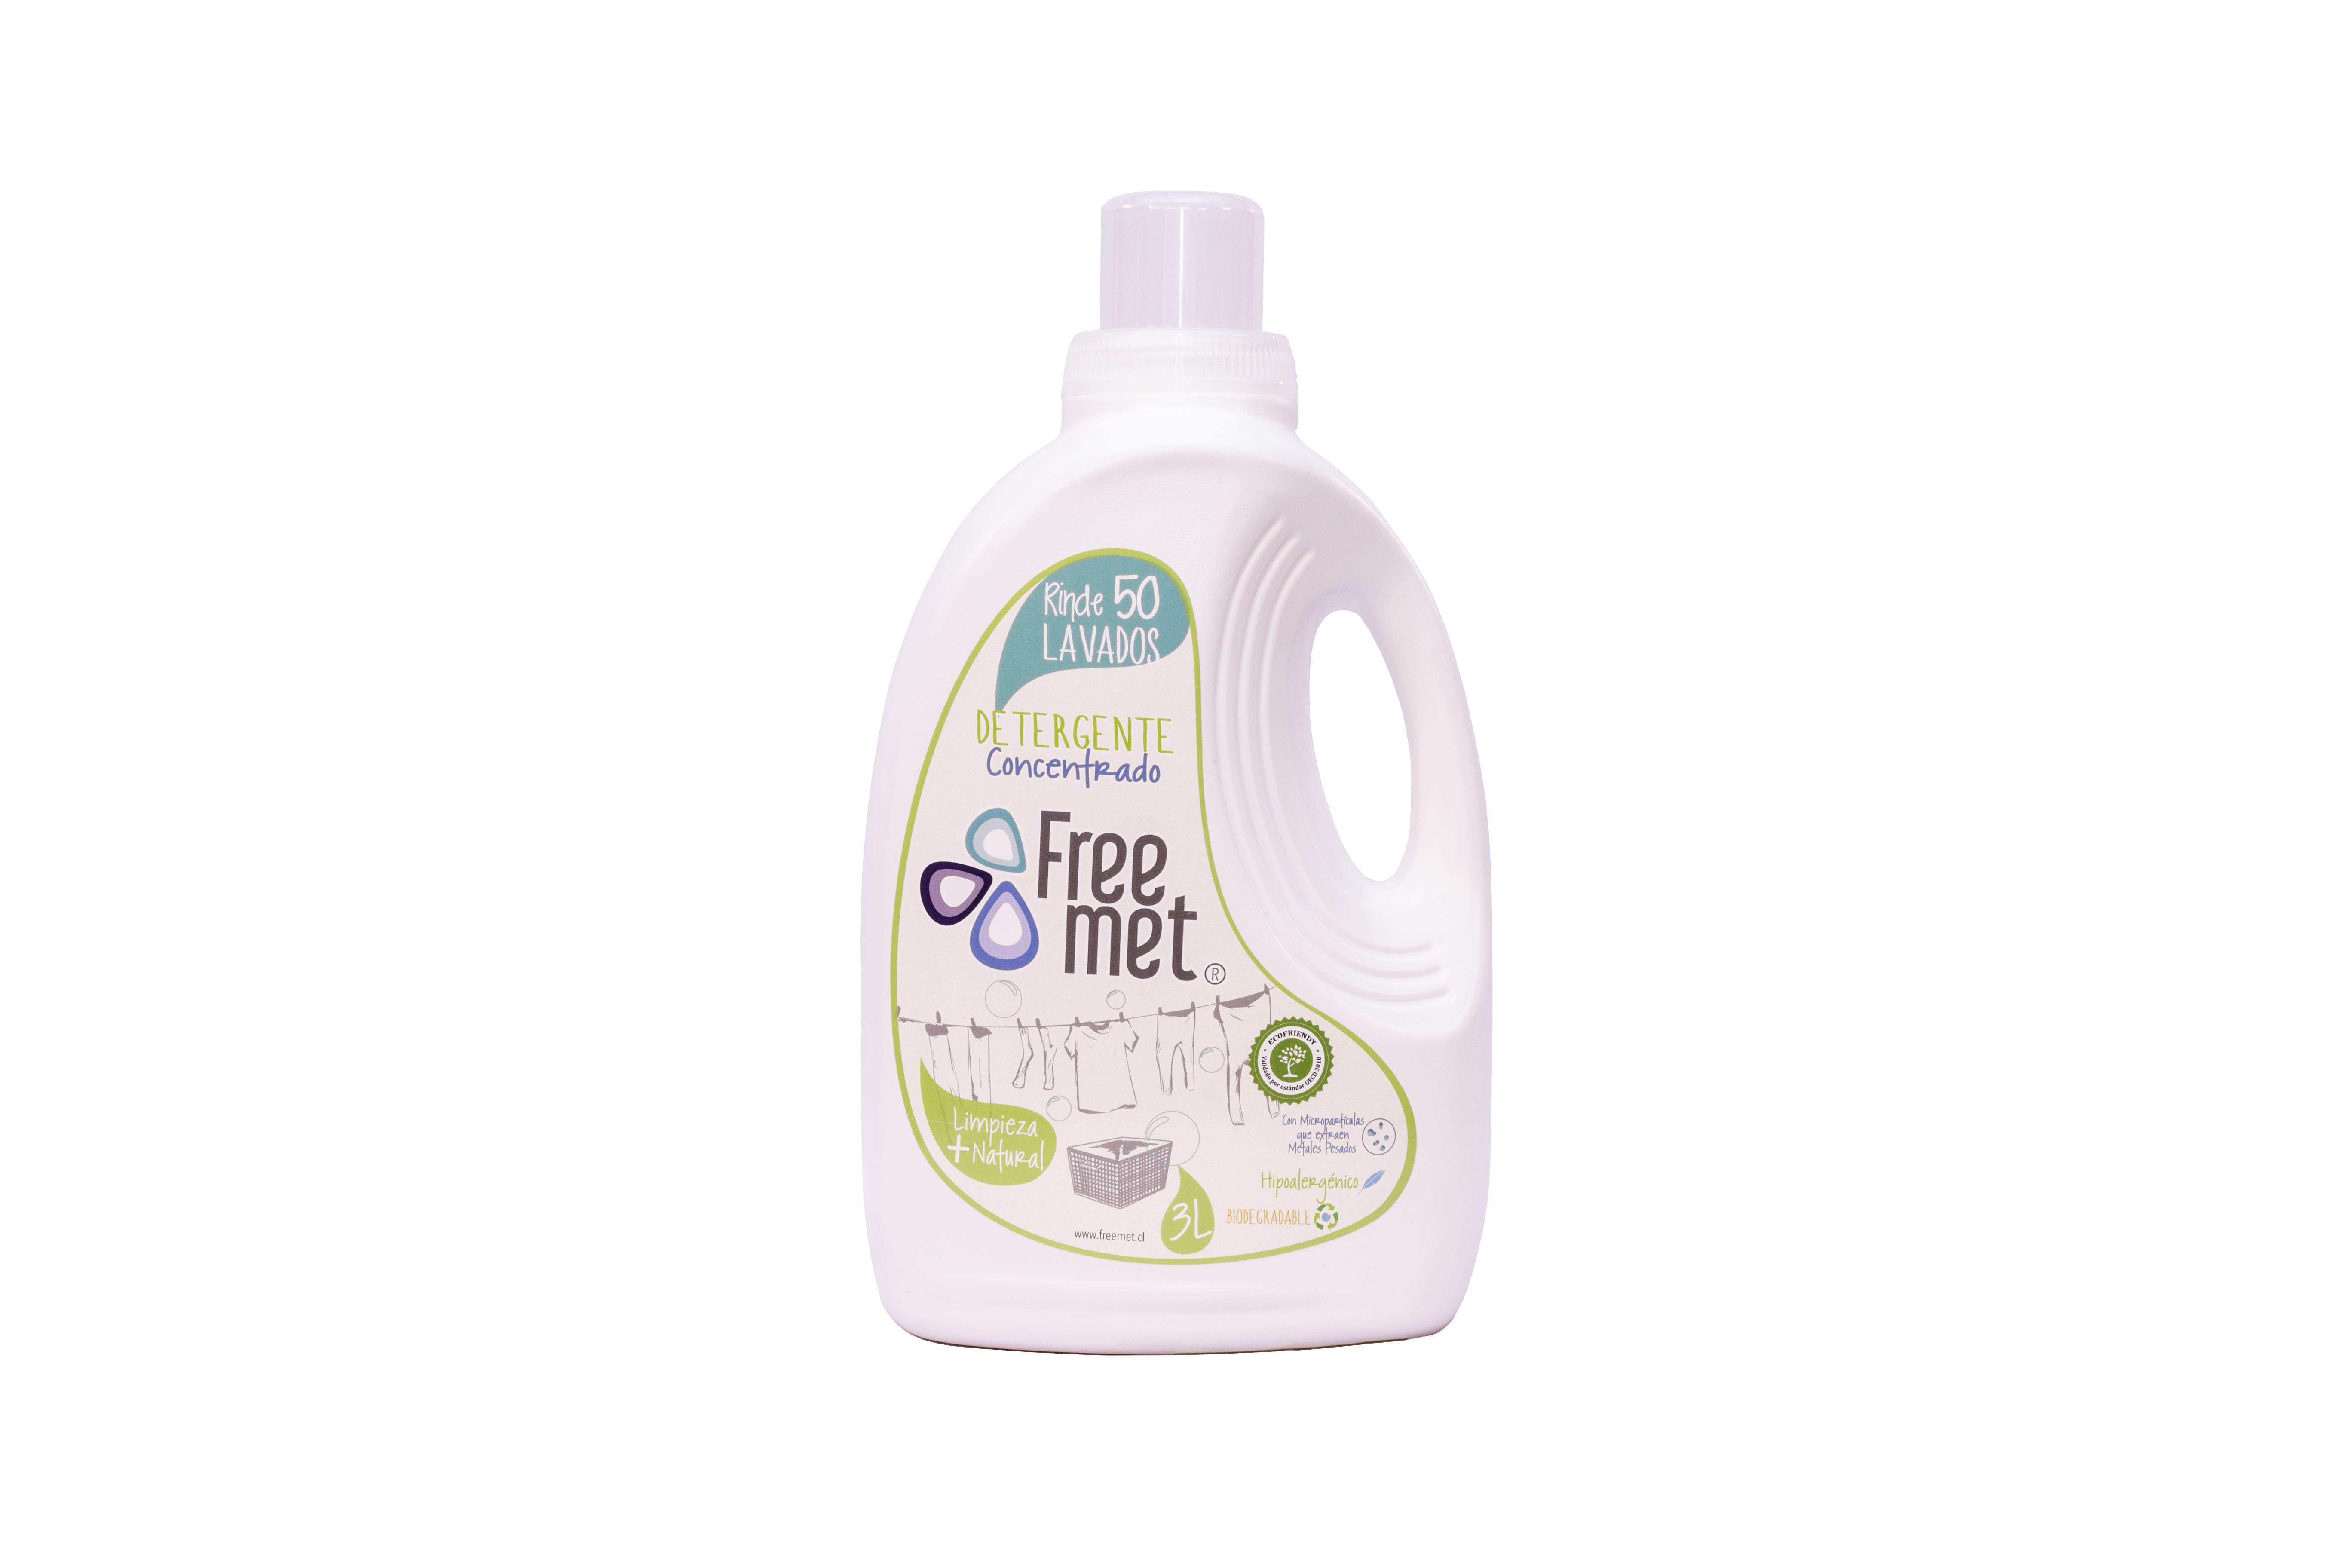 Detergente de Ropa Ecoamigable Freemet